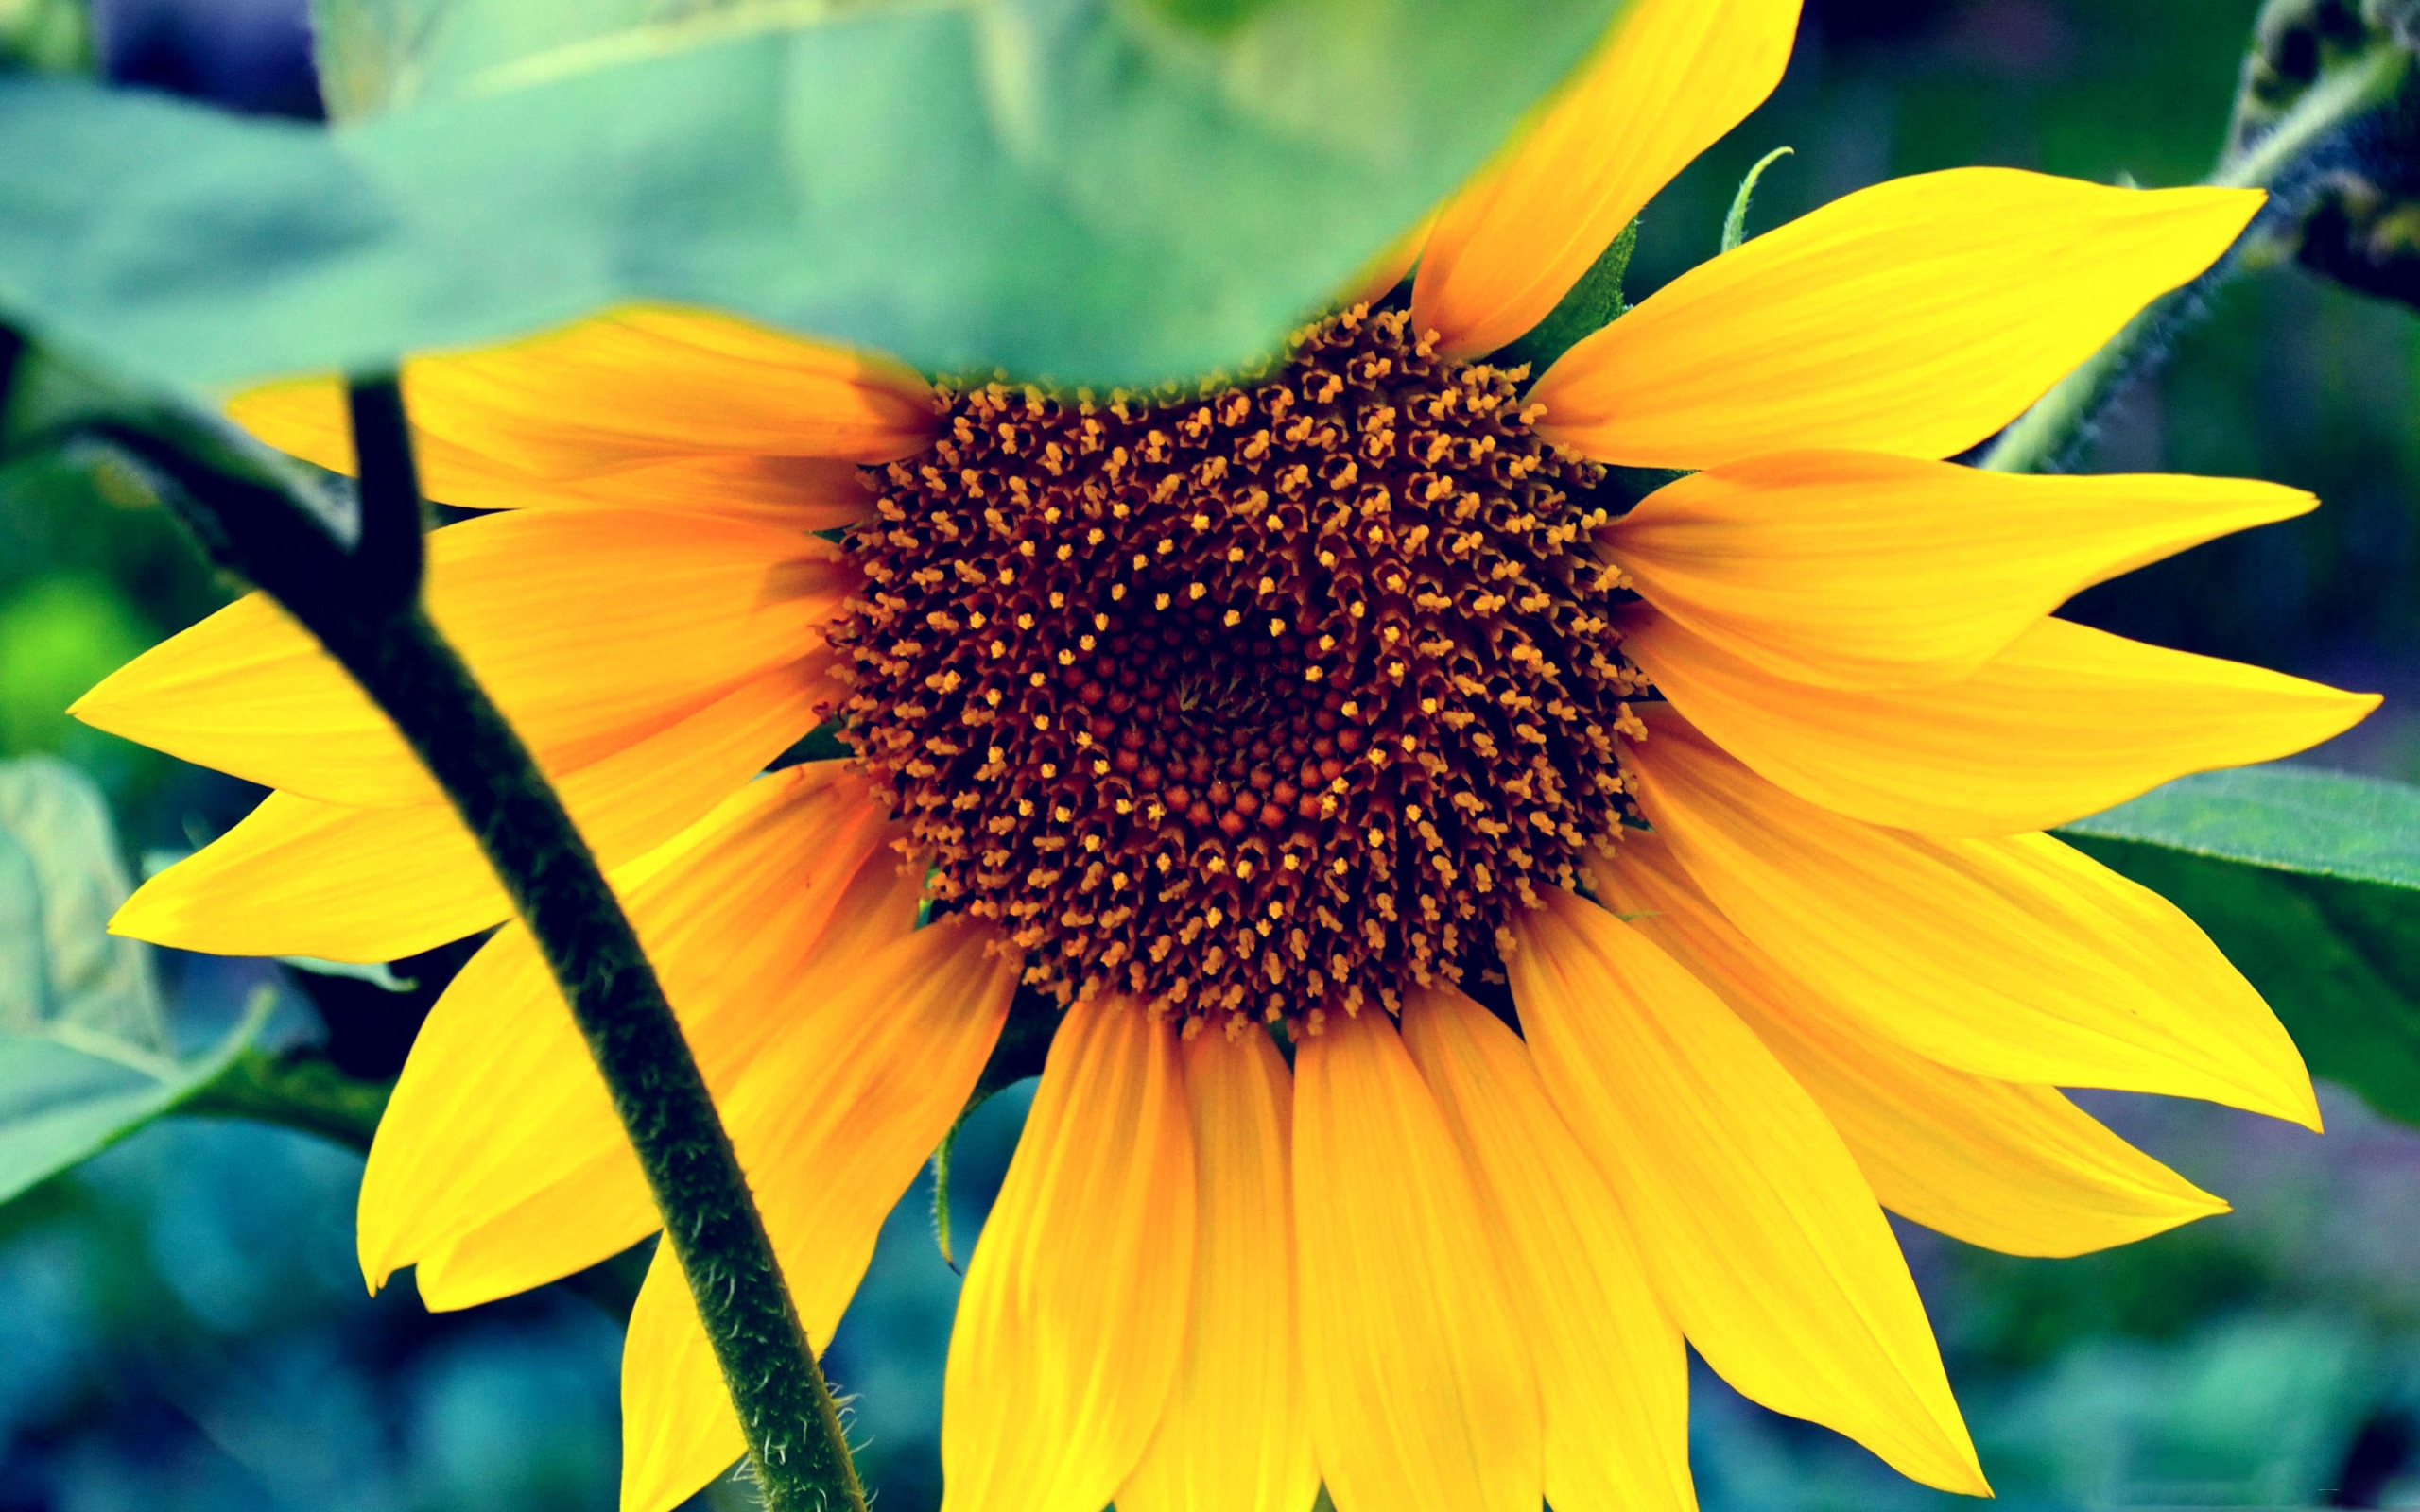 Macbook Pro Wallpaper - Sunflower Screensaver For Mac , HD Wallpaper & Backgrounds